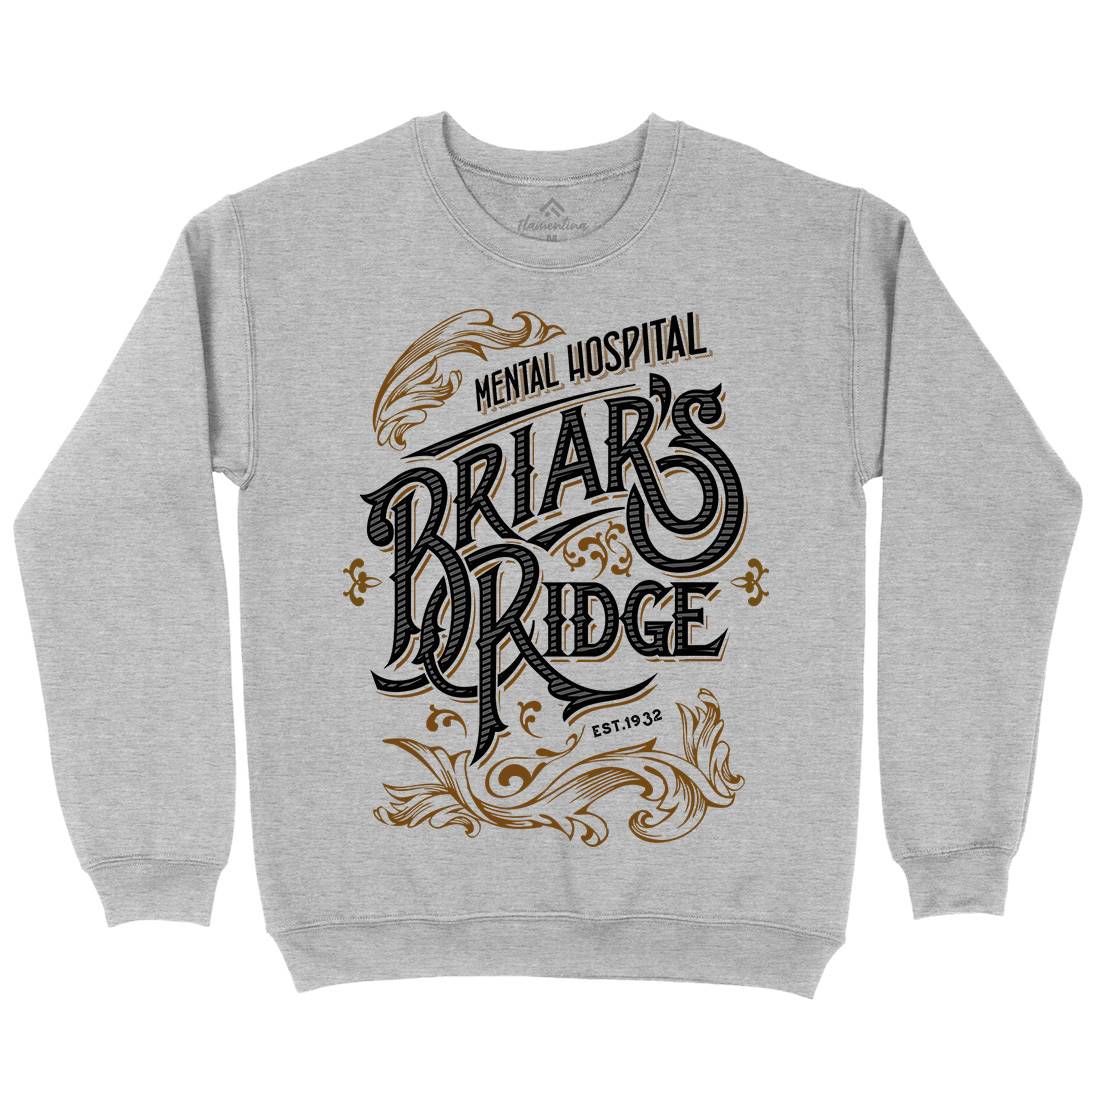 Briar Ridge Mens Crew Neck Sweatshirt Retro D367